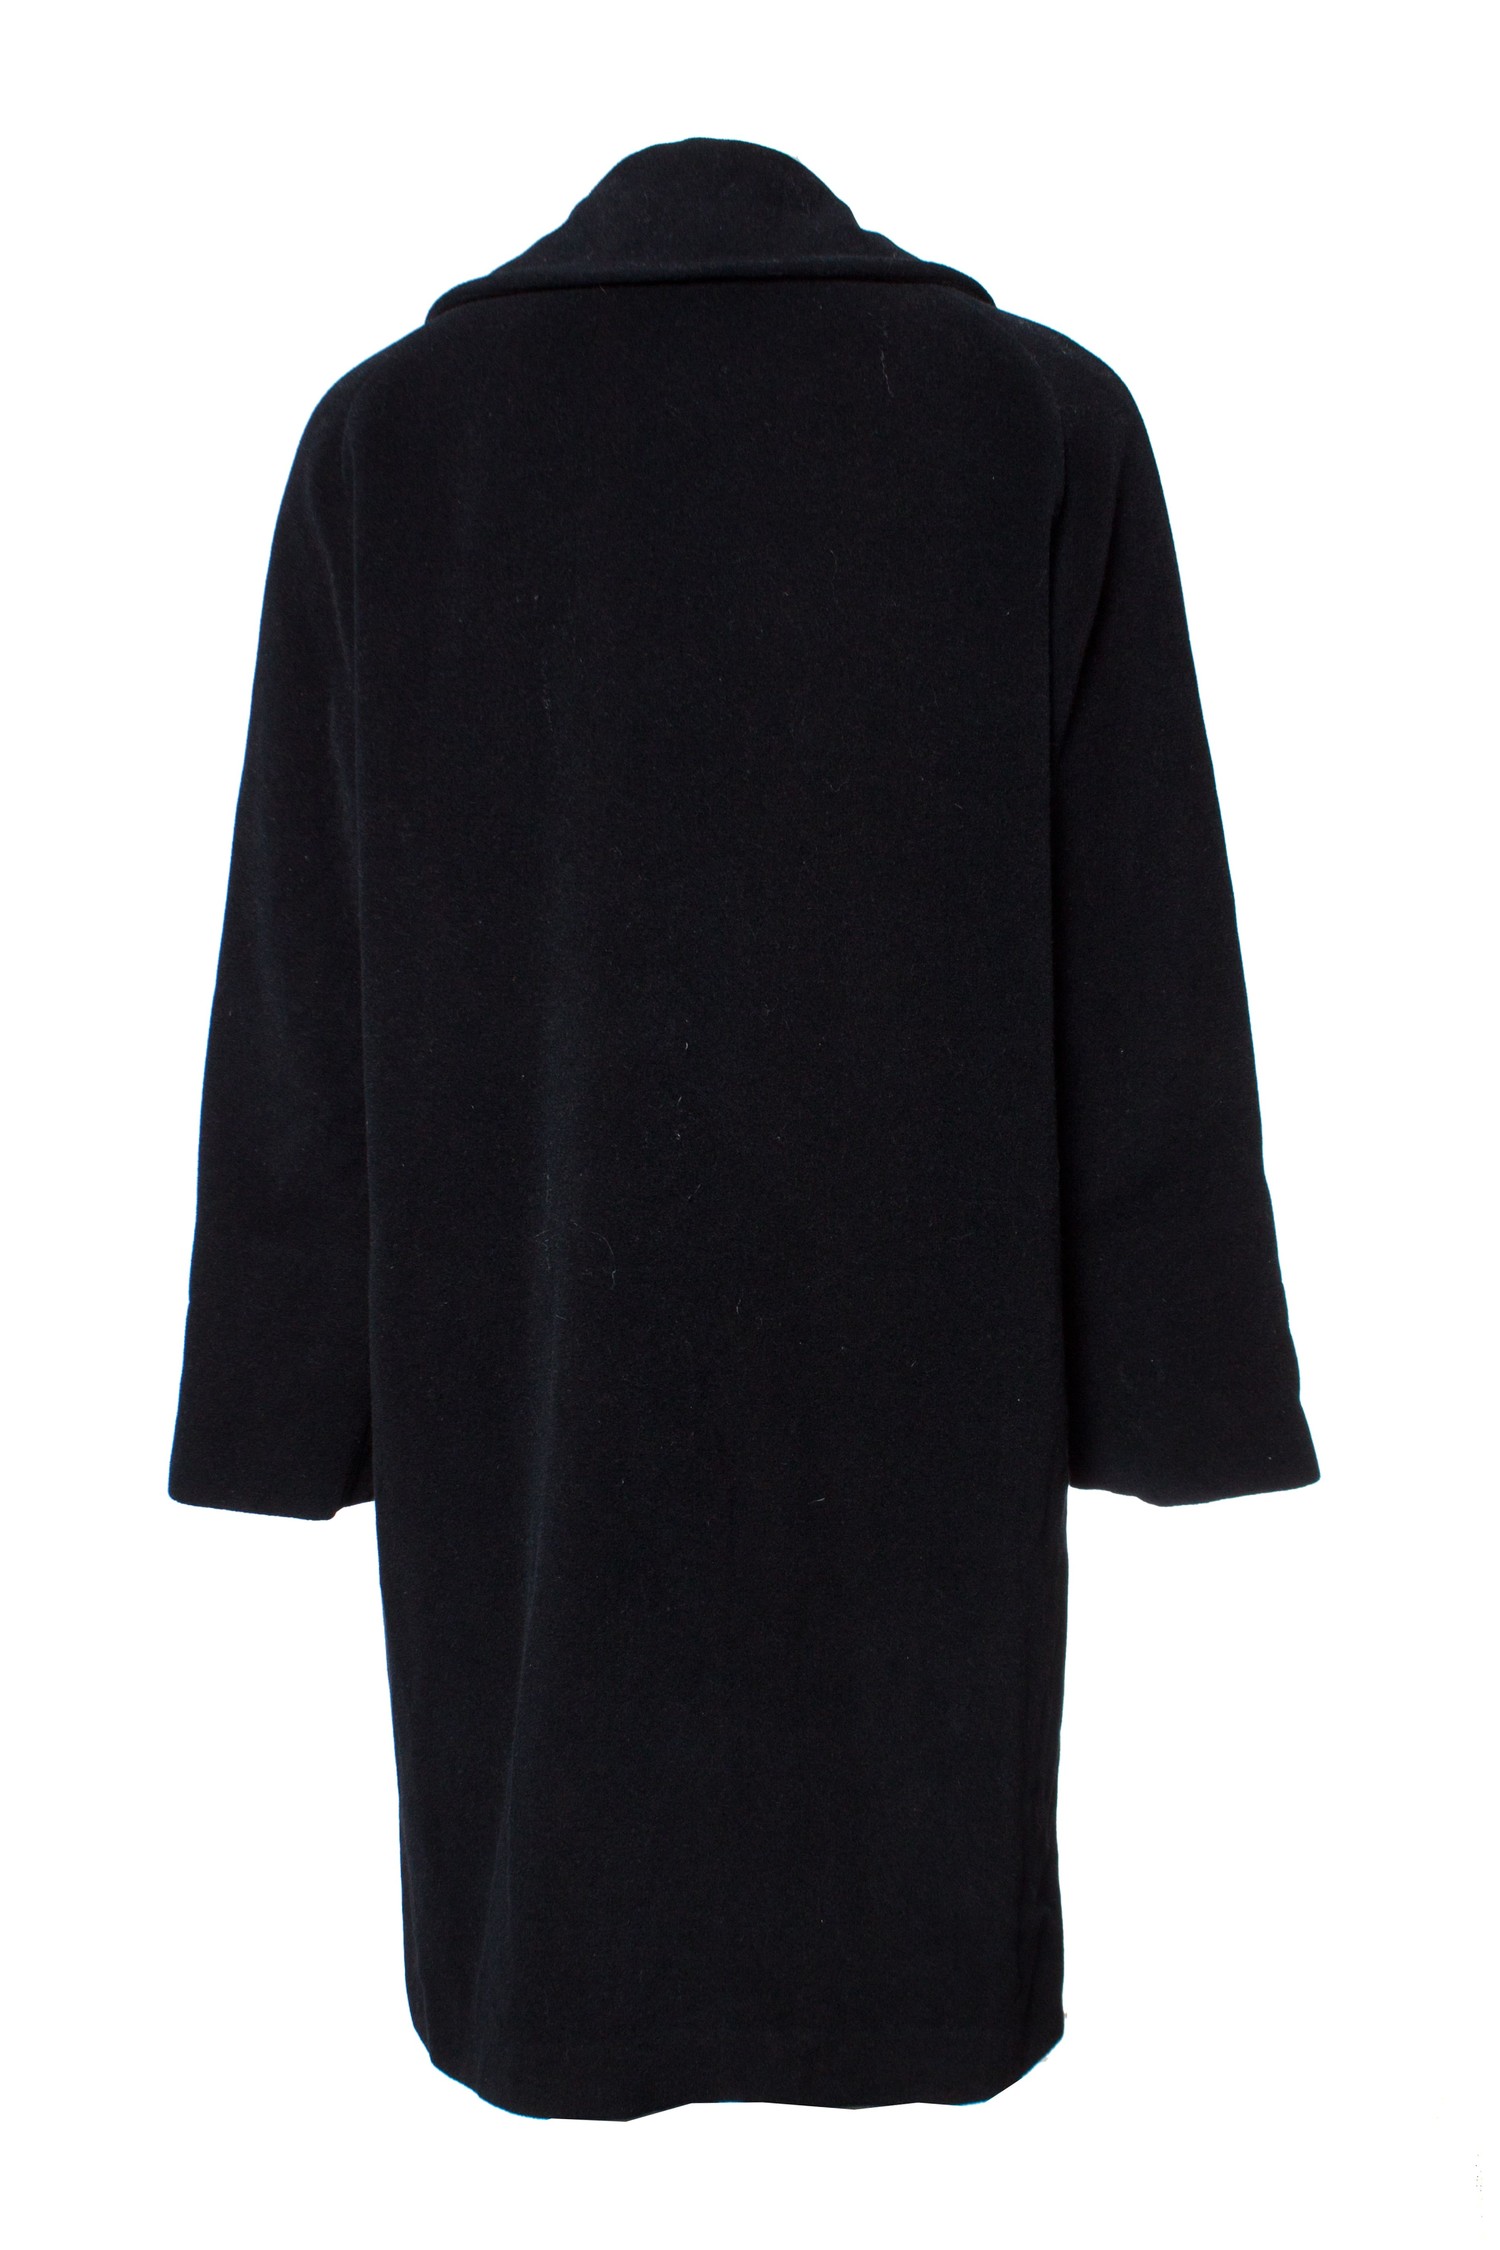 Jil Sander, Black oversized coat. - Unique Designer